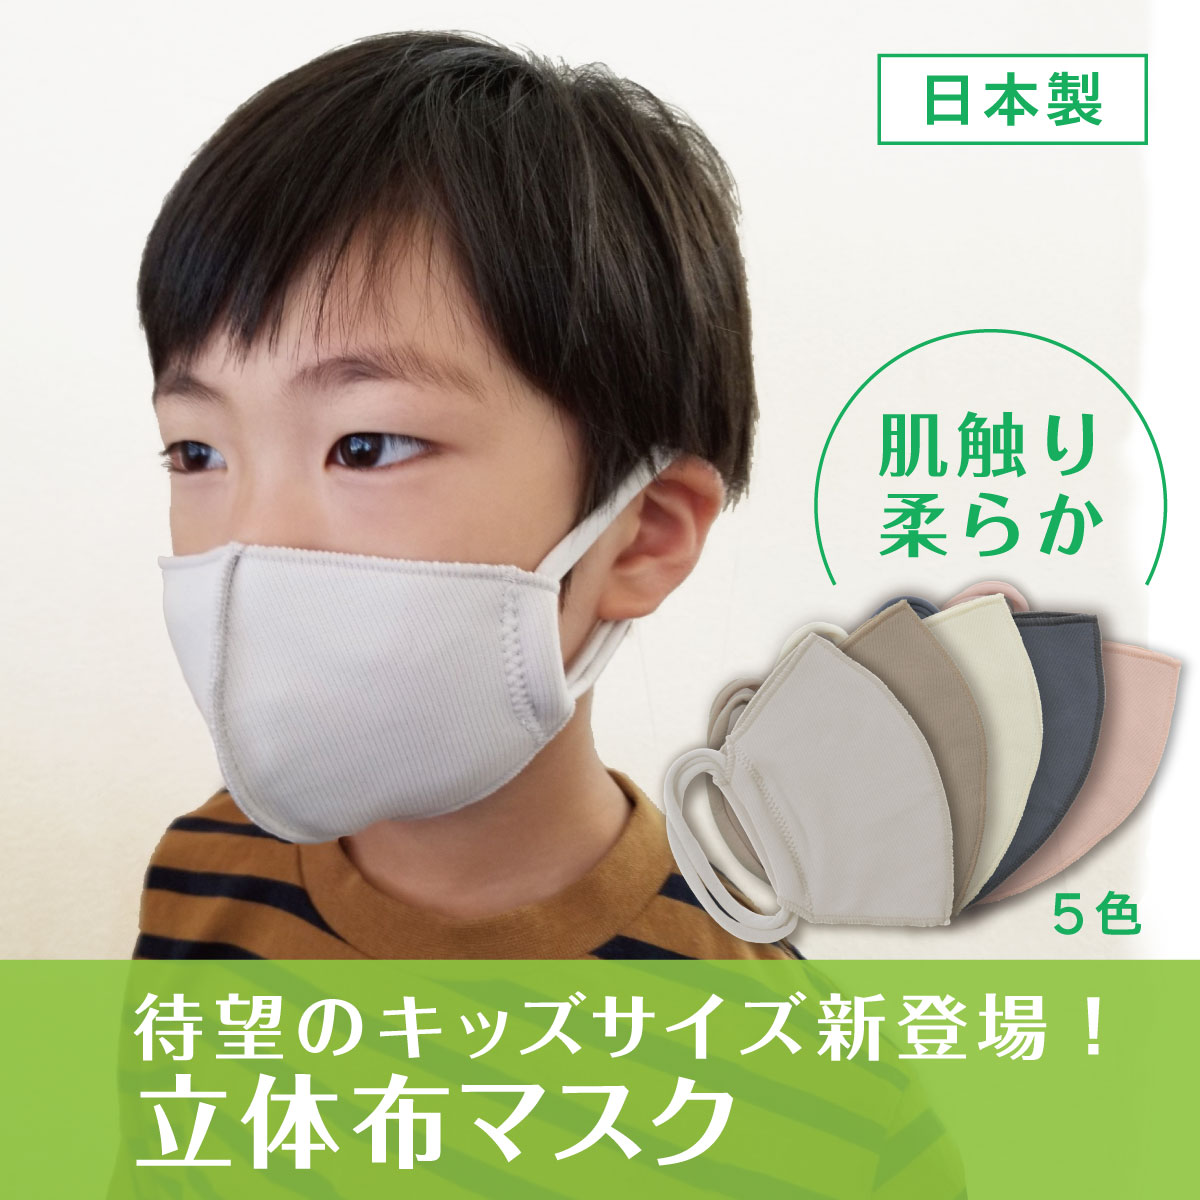 アツギ公式 オリジナル立体縫製布マスク 日本製 キッズサイズ フリーサイズ グレー 19 ケアアイテム Atsugi公式通販 アツギオンラインショップ